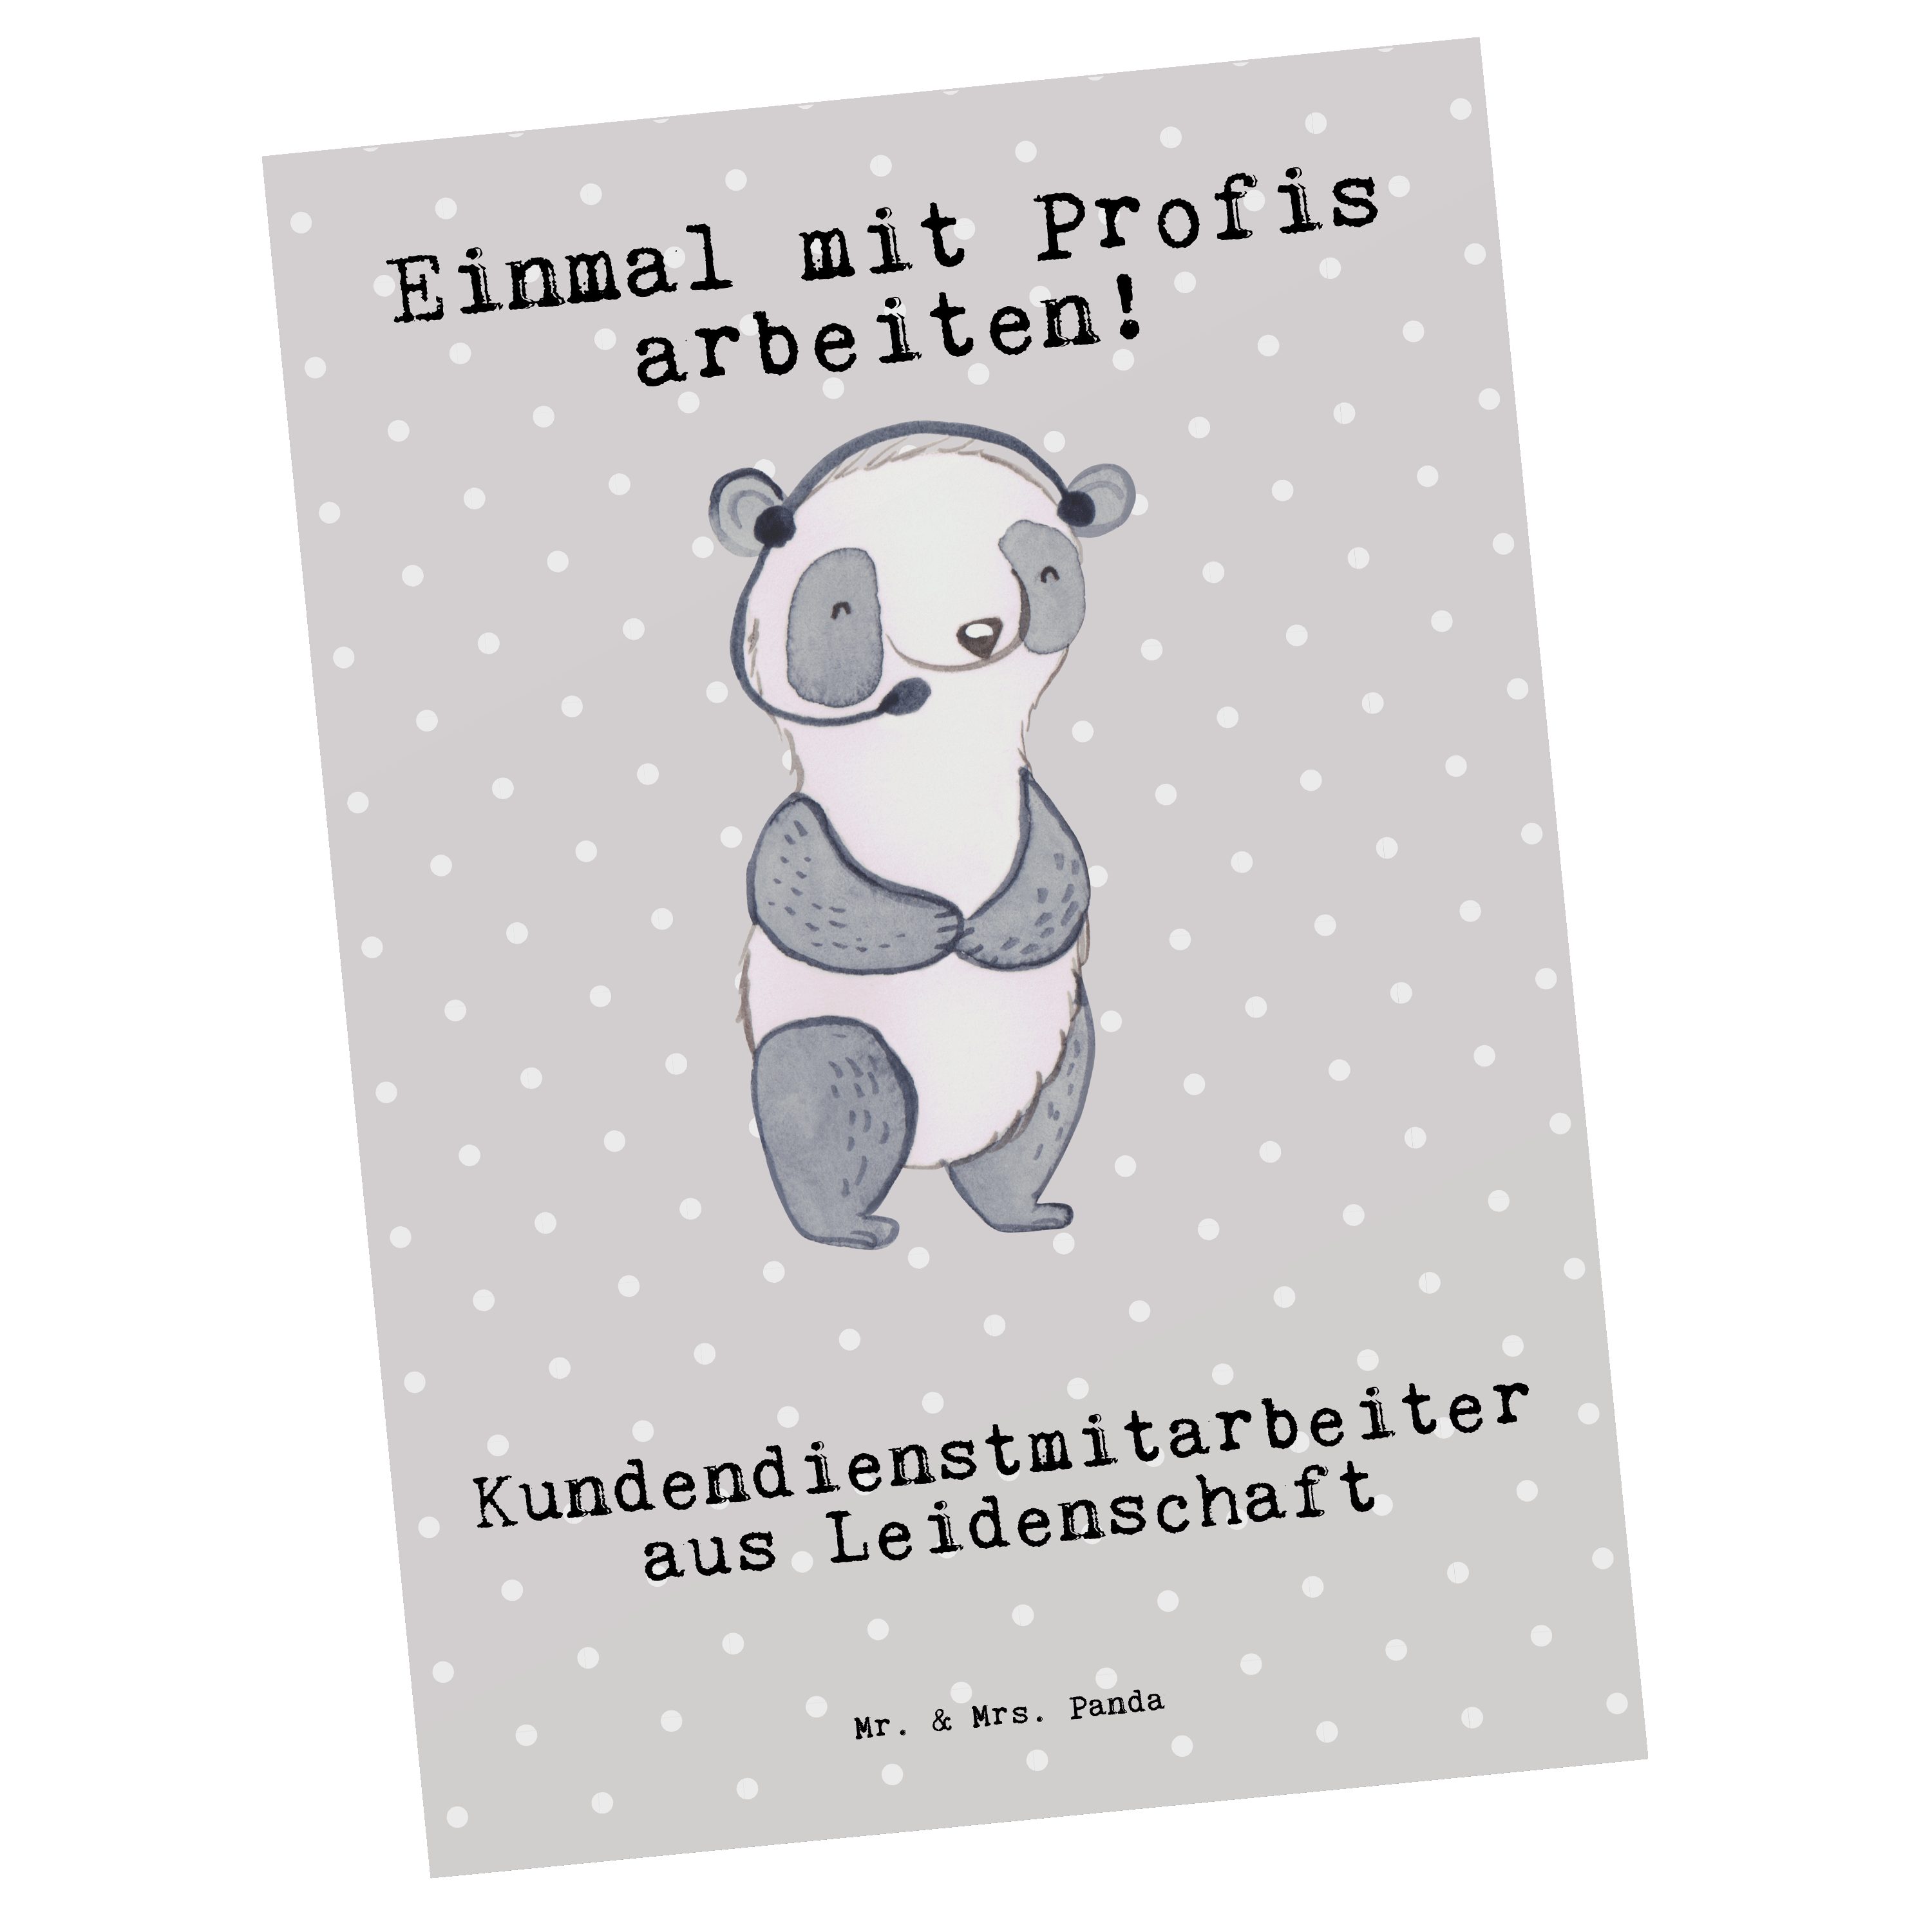 Grau & Leidenschaft - h Kundendienstmitarbeiter - Geschenk, Postkarte Mr. Panda Pastell aus Mrs.